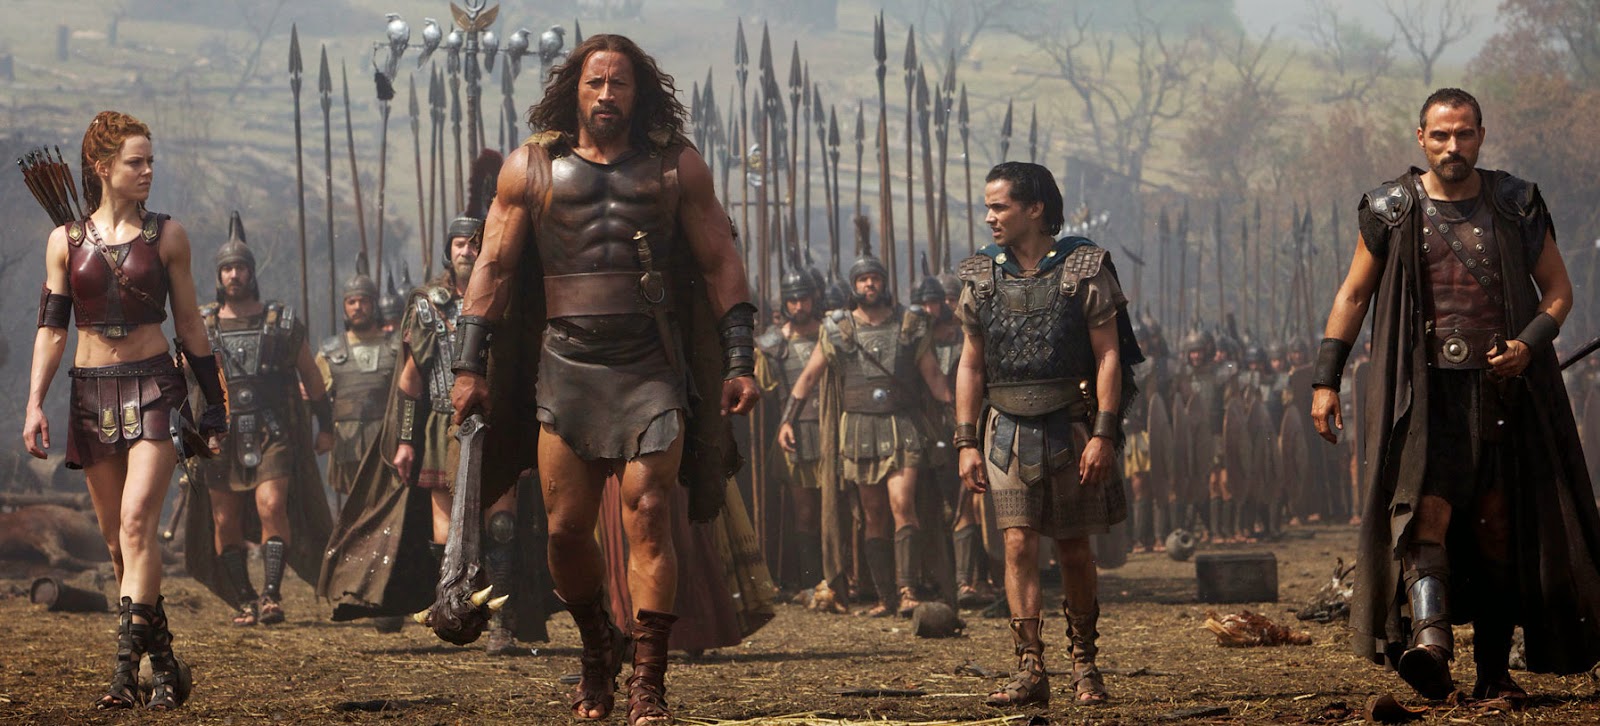 'Hercules' là một trong 10 phim bom tấn của mùa hè 2014